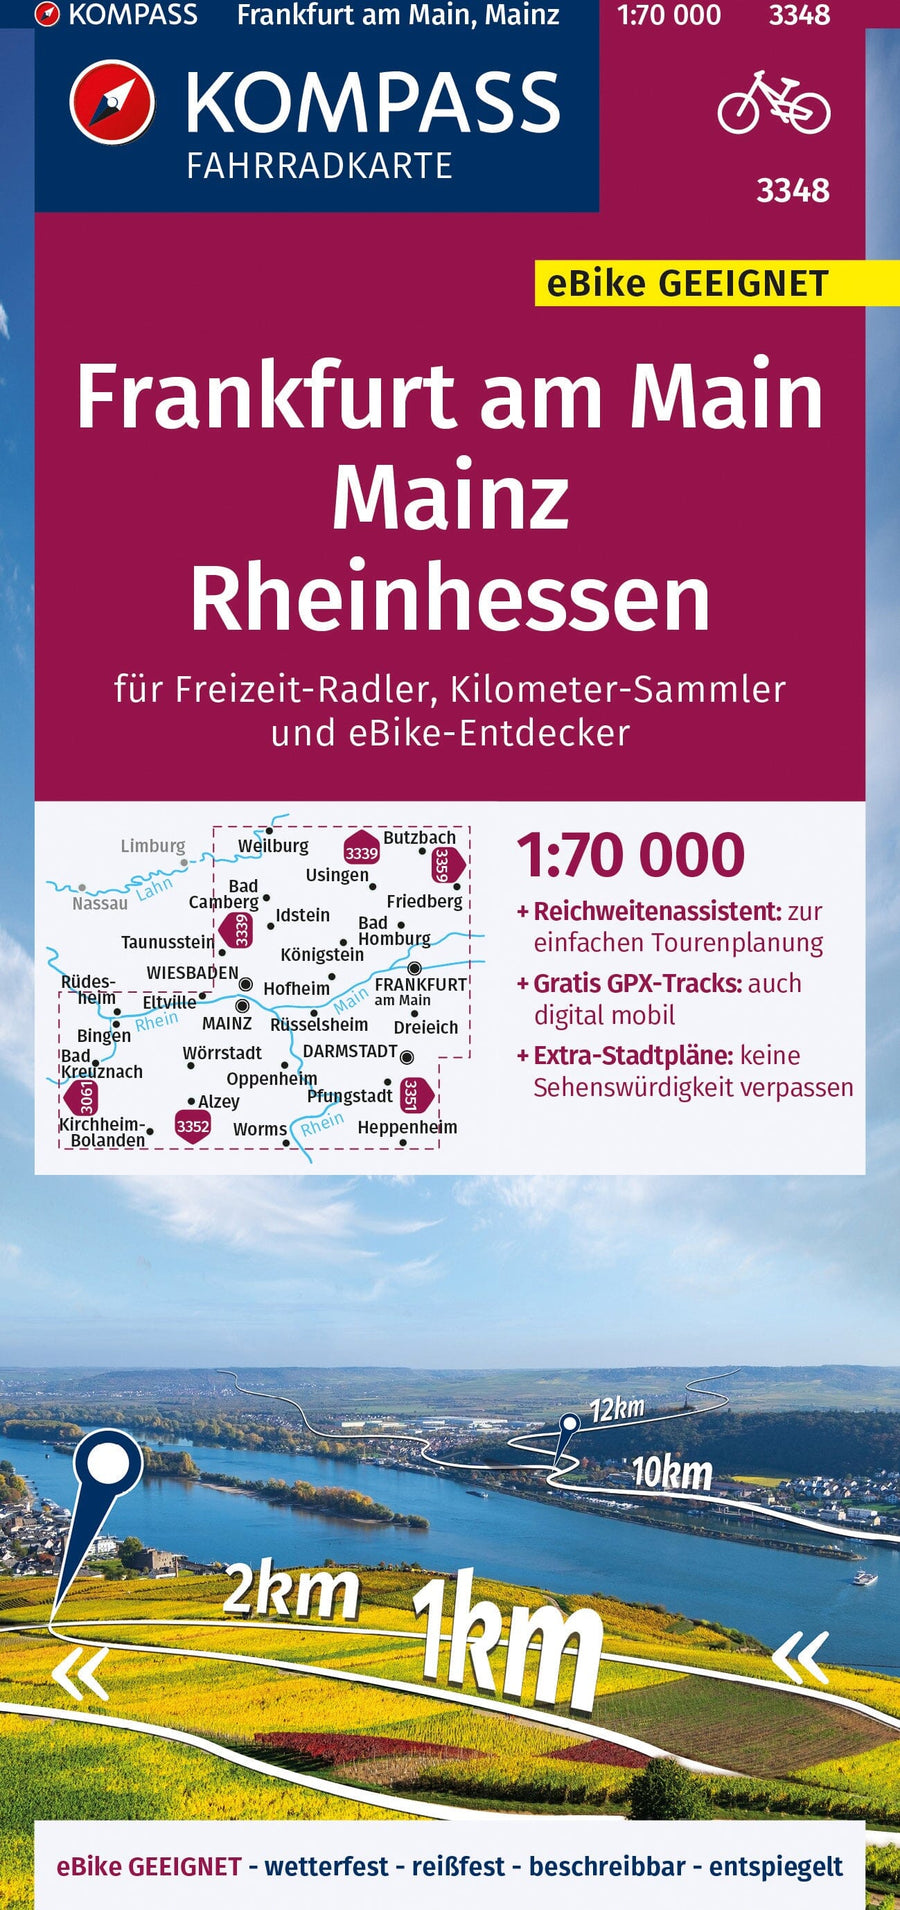 Carte cycliste n° F3348 - Frankfurt am Main, Mainz, Rheinhessen (Allemagne) | Kompass carte pliée Kompass 